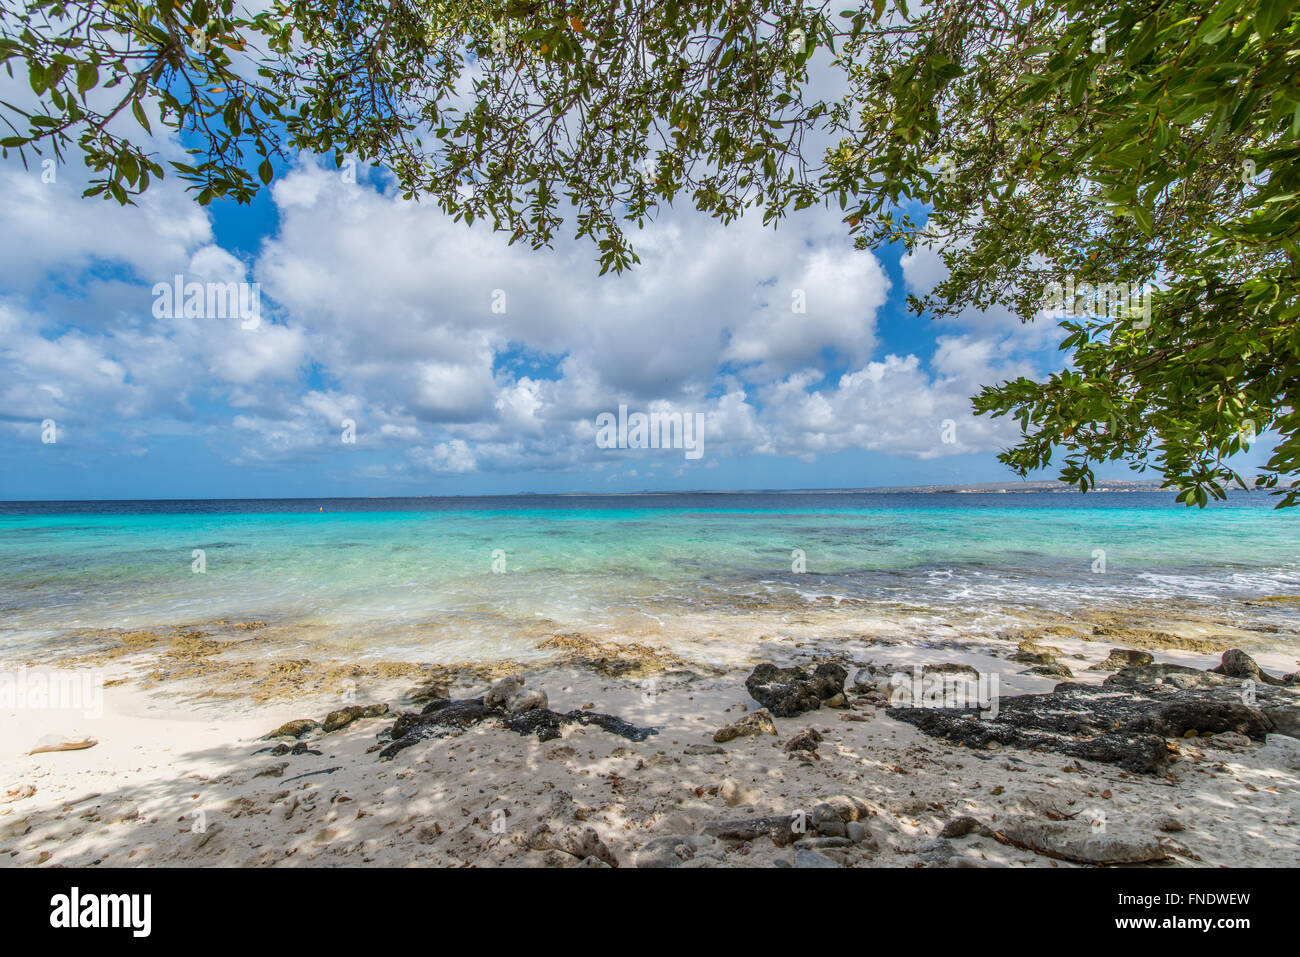 Très belle vue sur la mer des Caraïbes et les plages du parc national marin de Bonaire, l'un des mondes les plus beaux endroits de plongée et de snorkling Banque D'Images